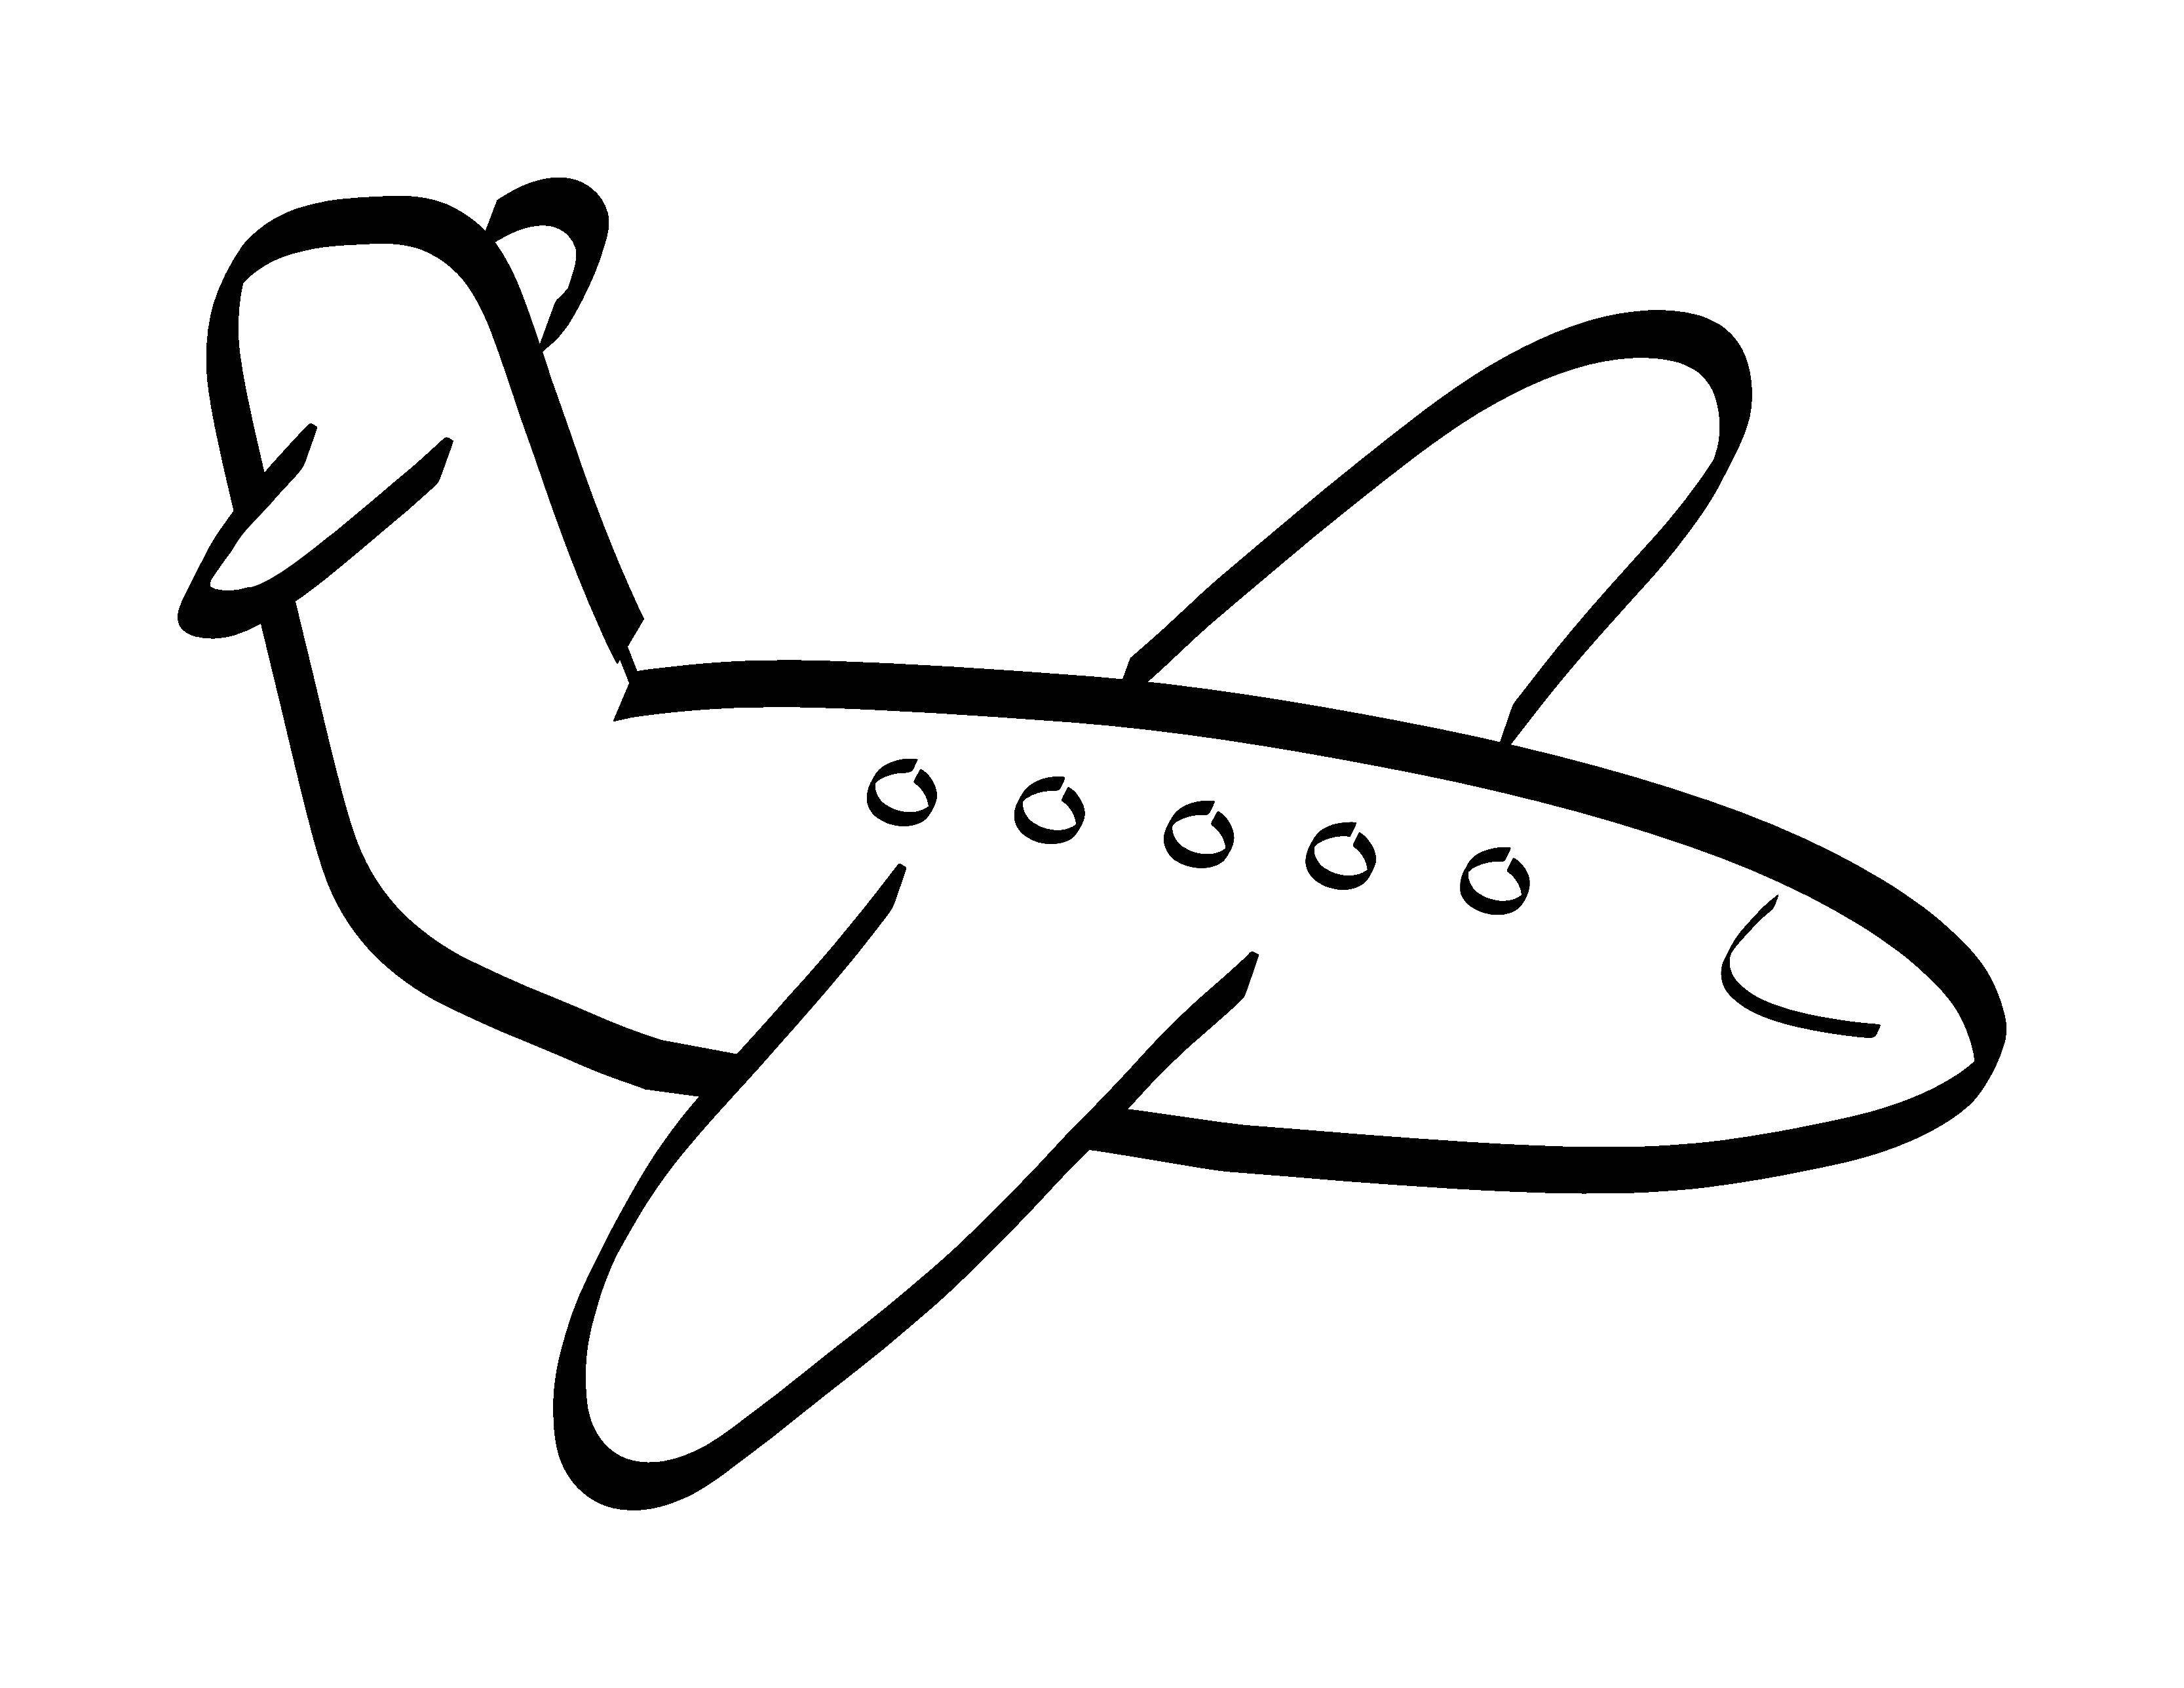 Название: Раскраска Парящий самолёт. Категория: Самолеты. Теги: Самолёт.